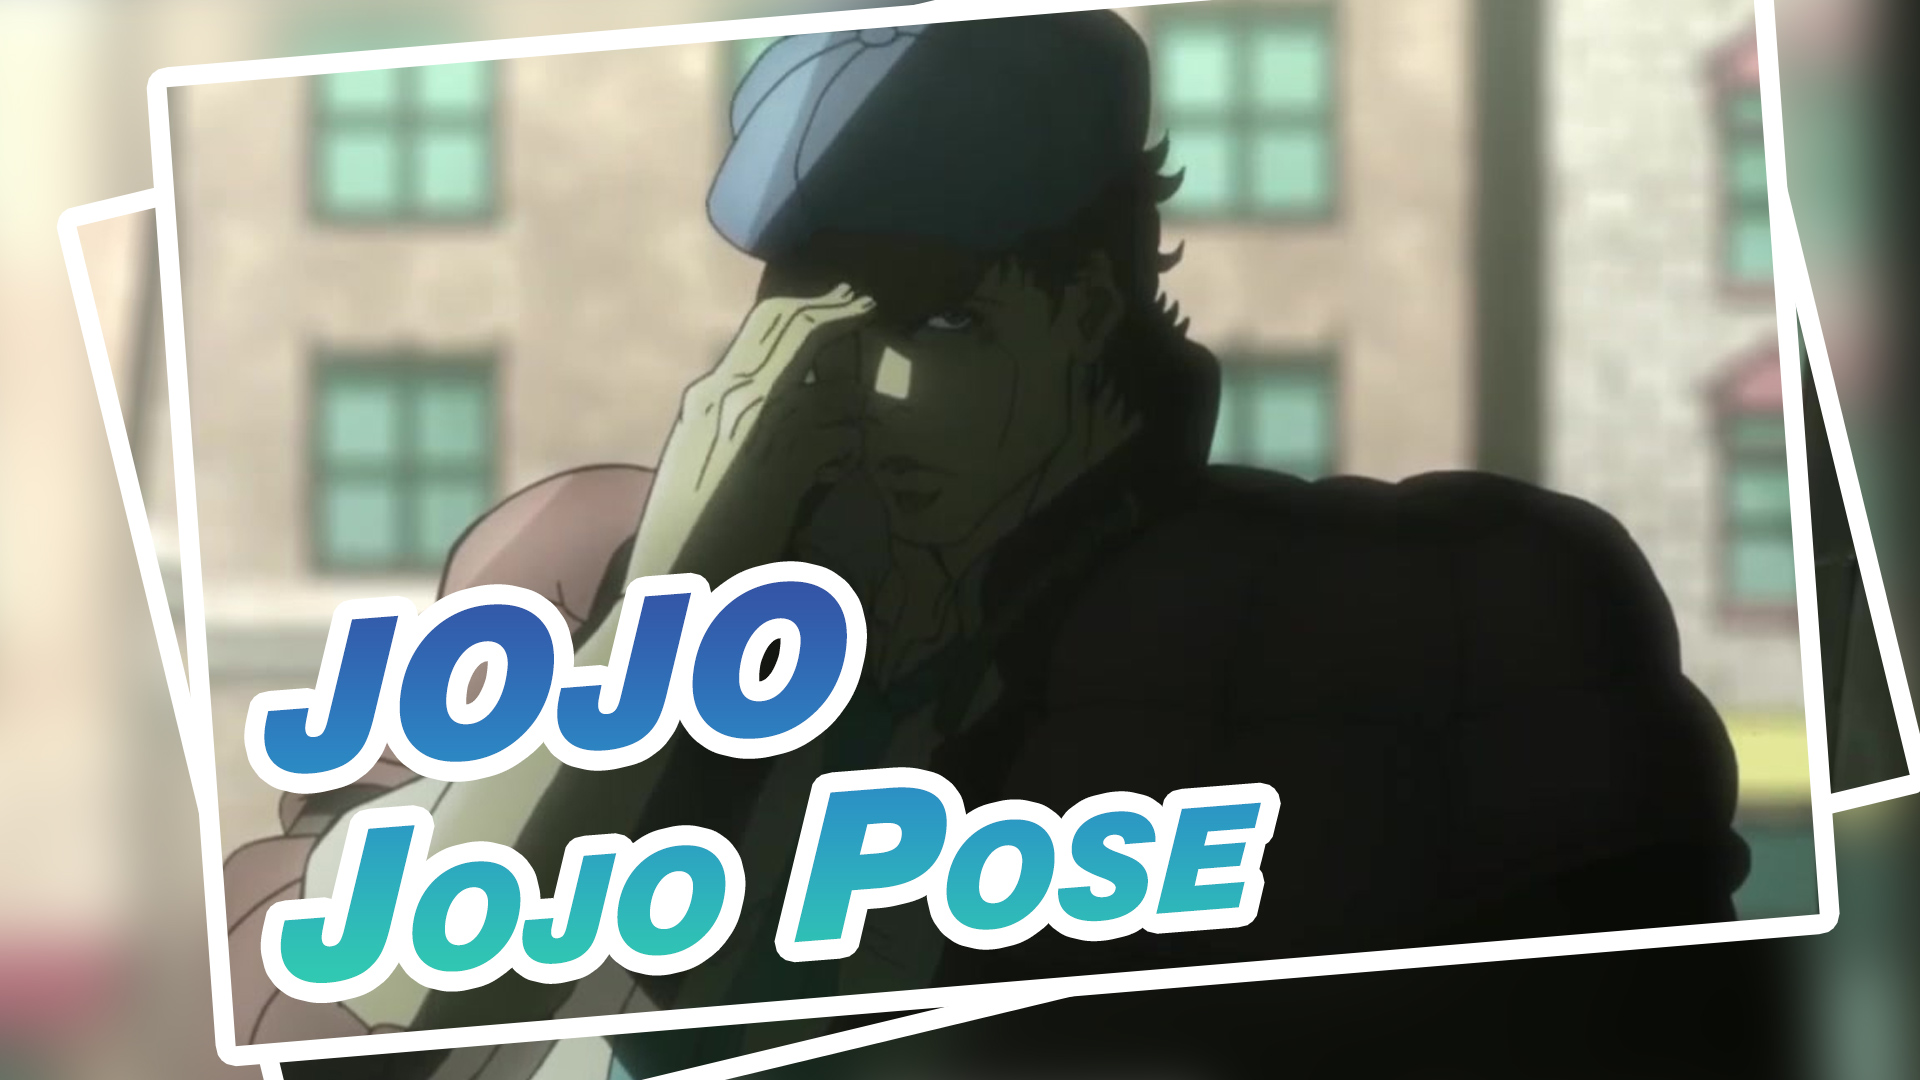 Jojo Pose (Jotaro